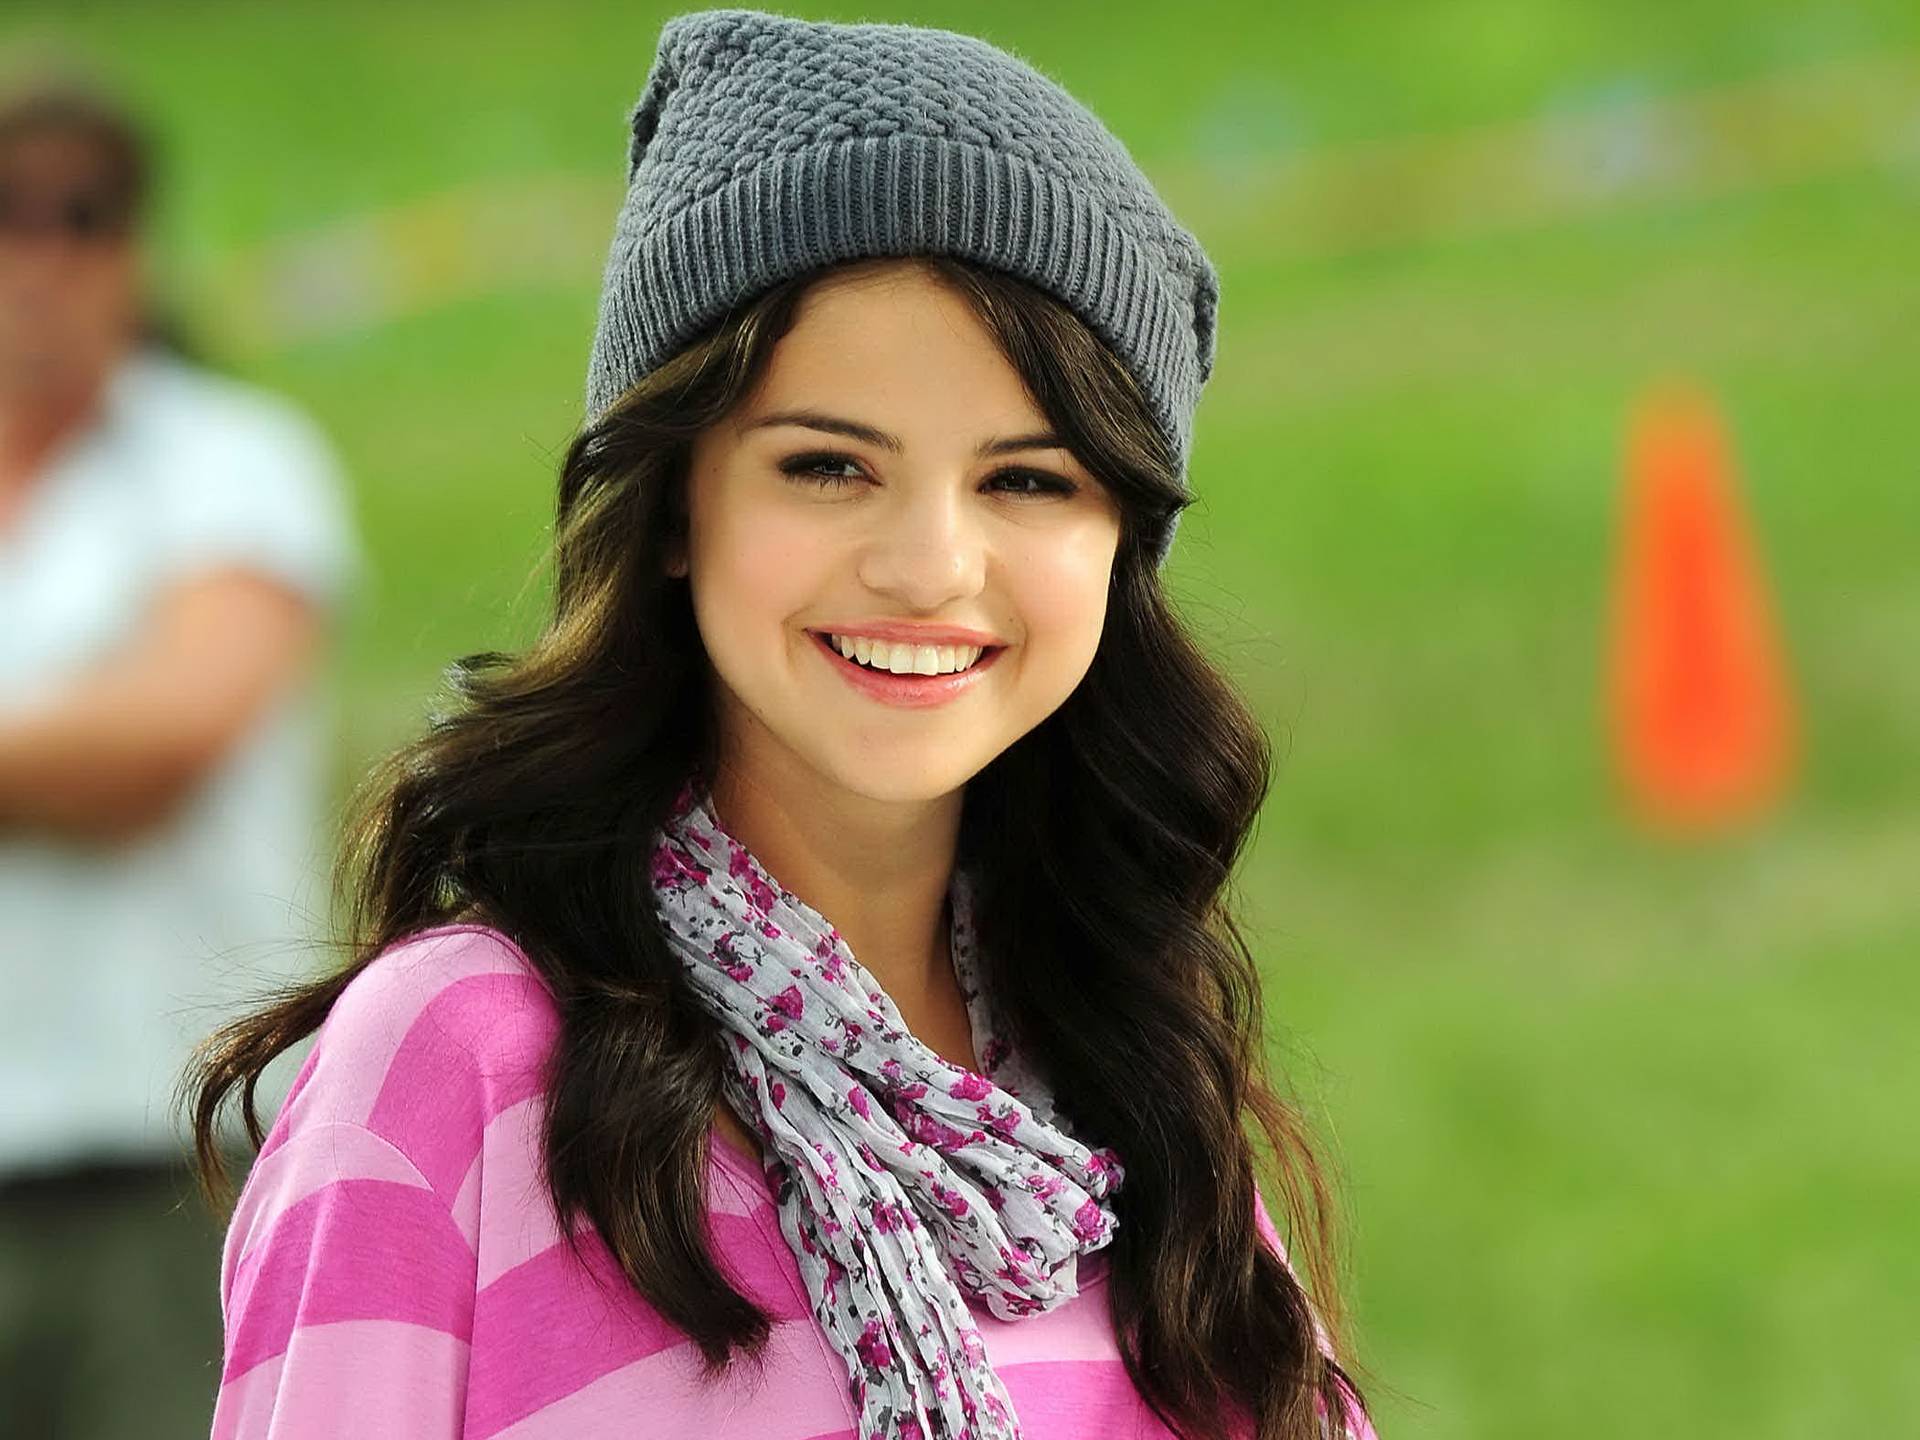 Adorable Selena Gomez Picture